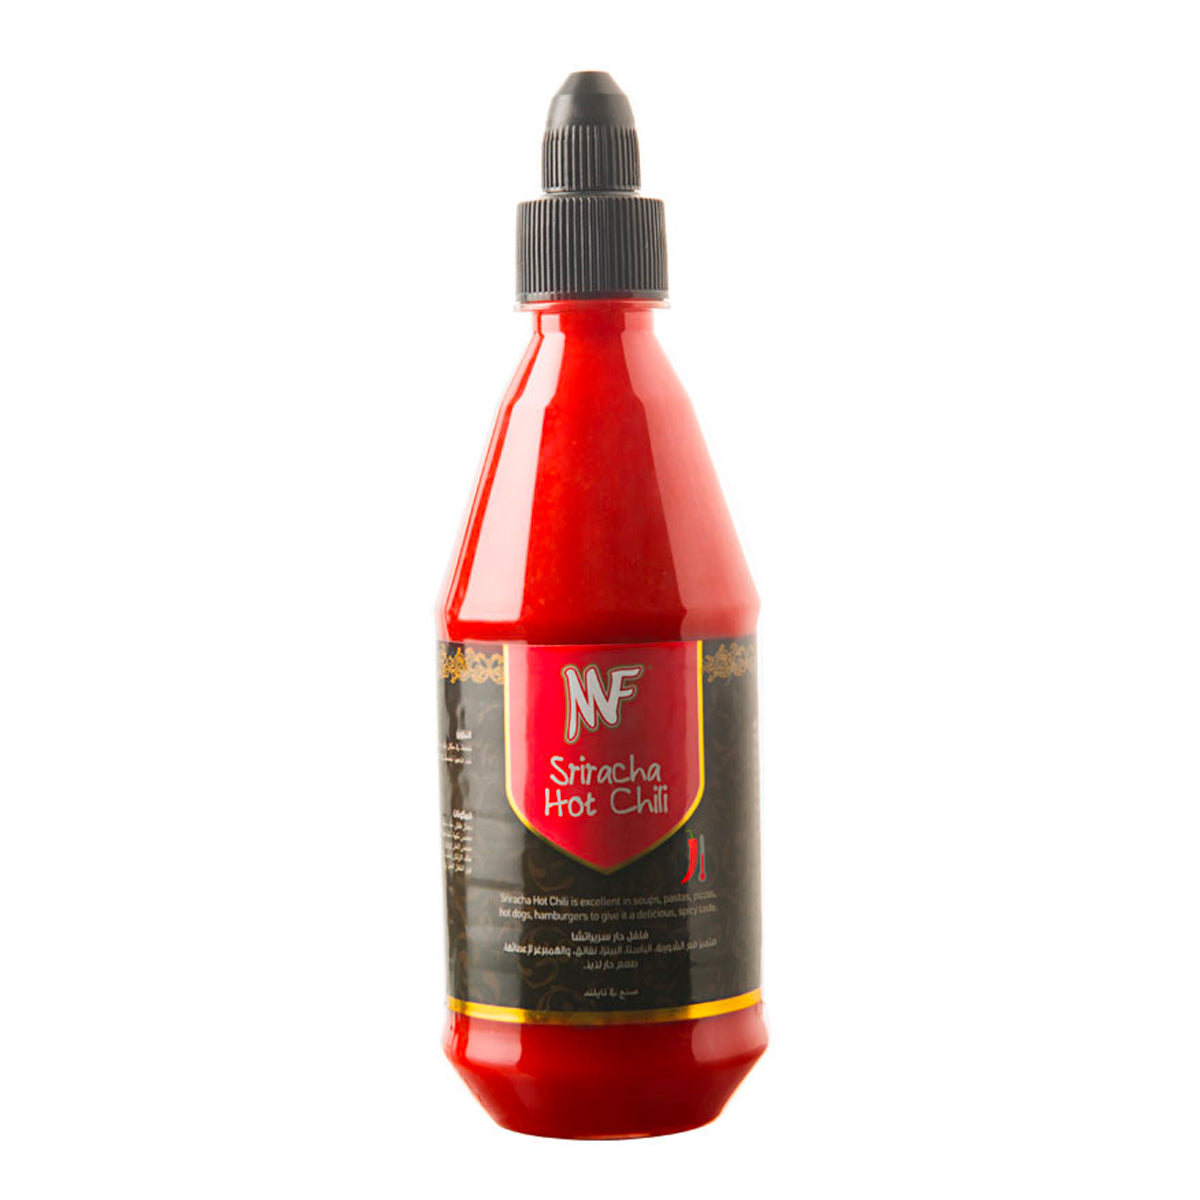 MF Sriracha Hot Chili Sauce 435ml